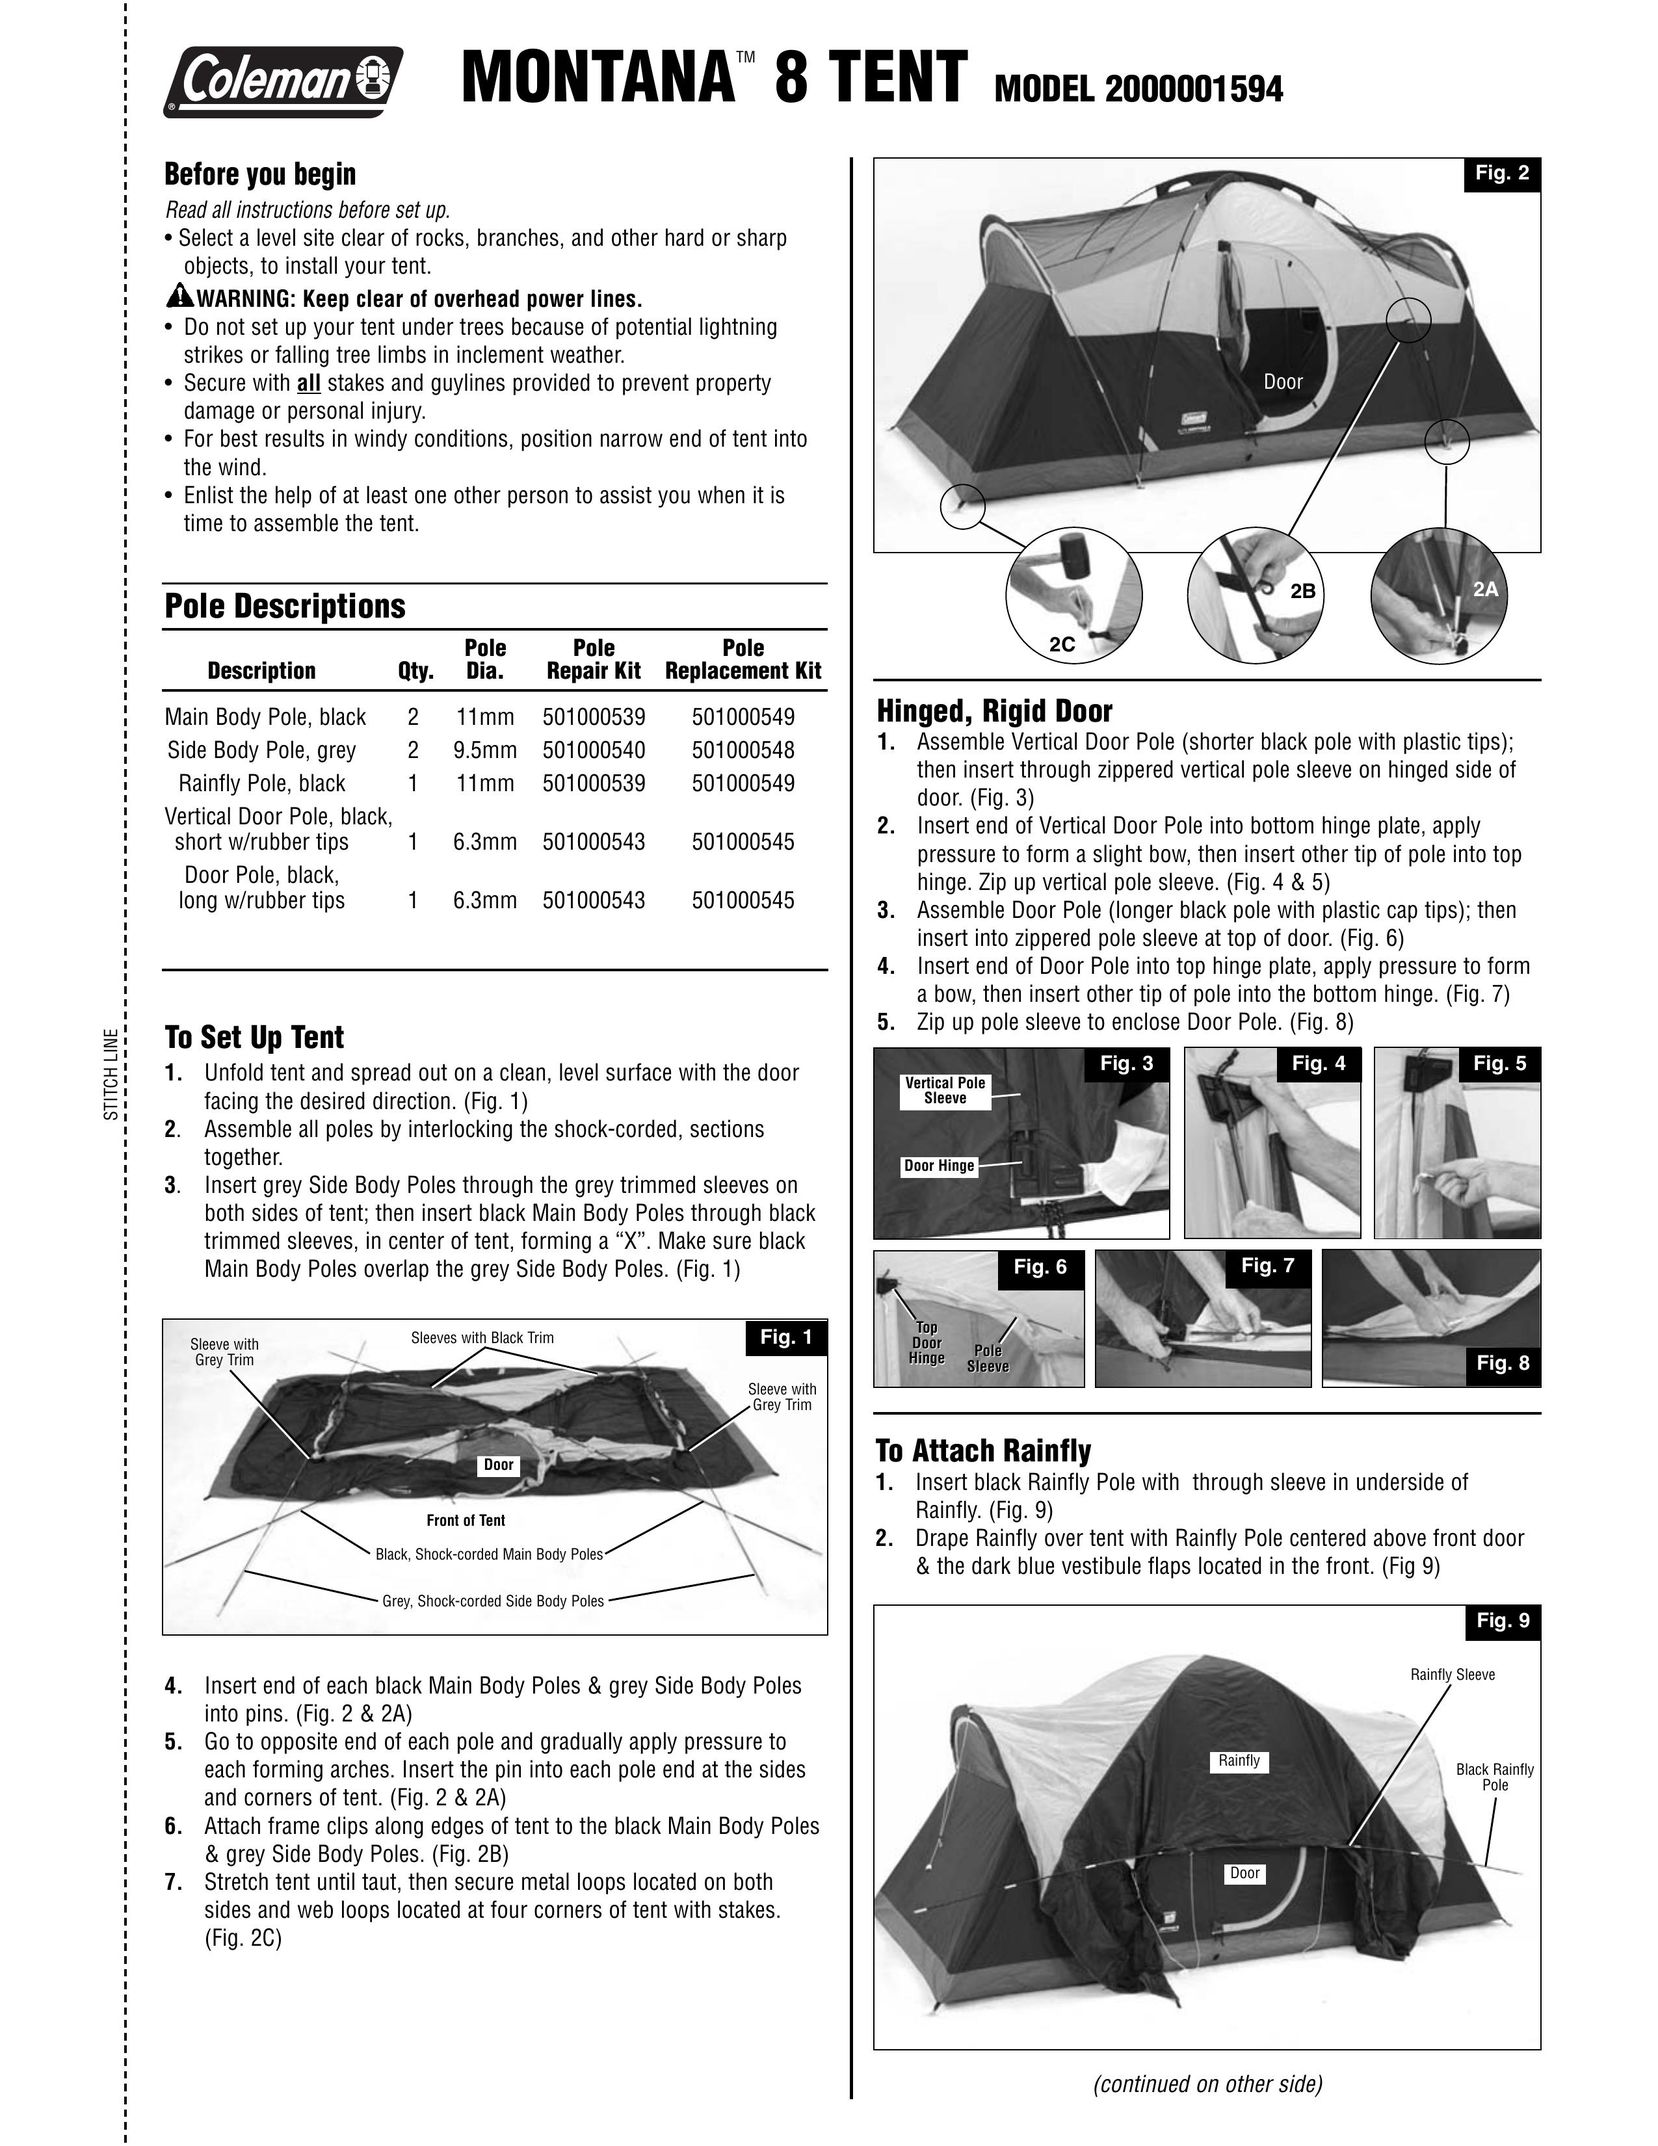 Coleman 2000001594 Tent User Manual